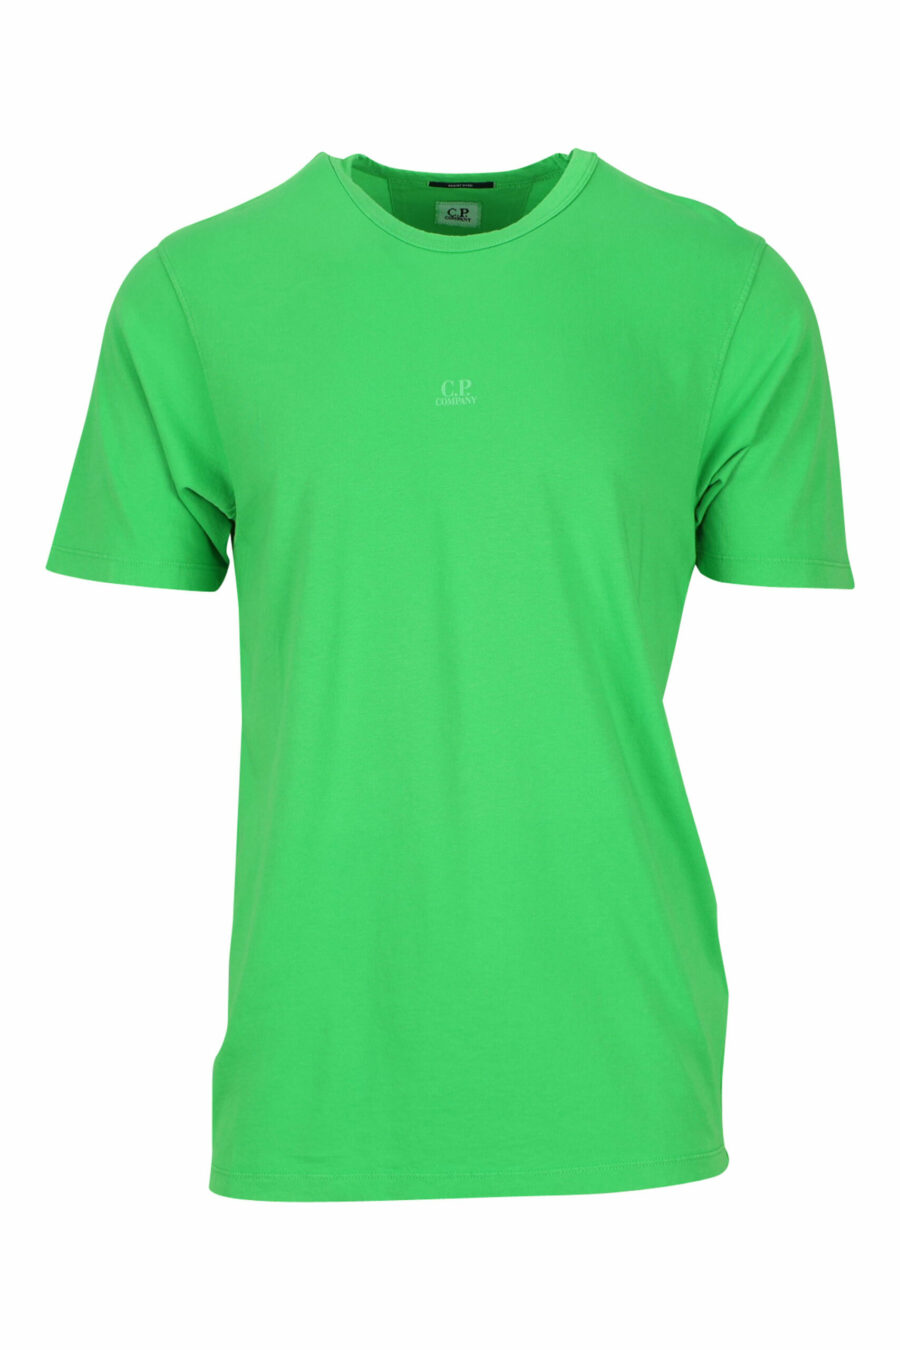 Grünes T-Shirt mit zentriertem Mini-Logo - 7620943594997 skaliert